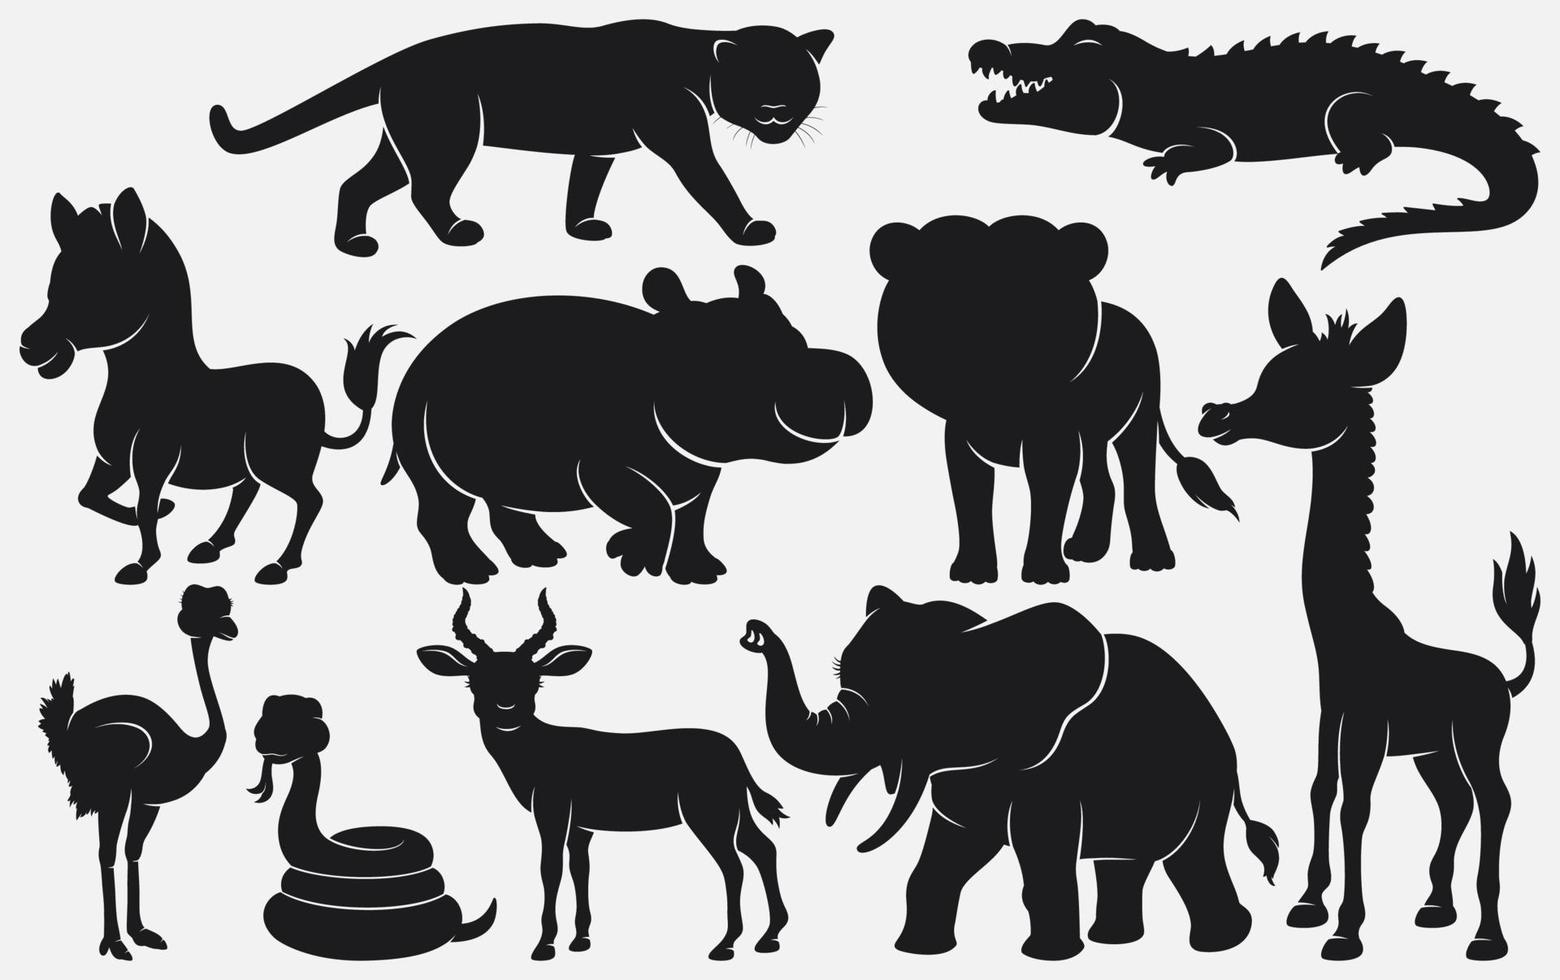 ensemble de silhouettes noires dessin animé d'animaux sauvages sur fond blanc vecteur